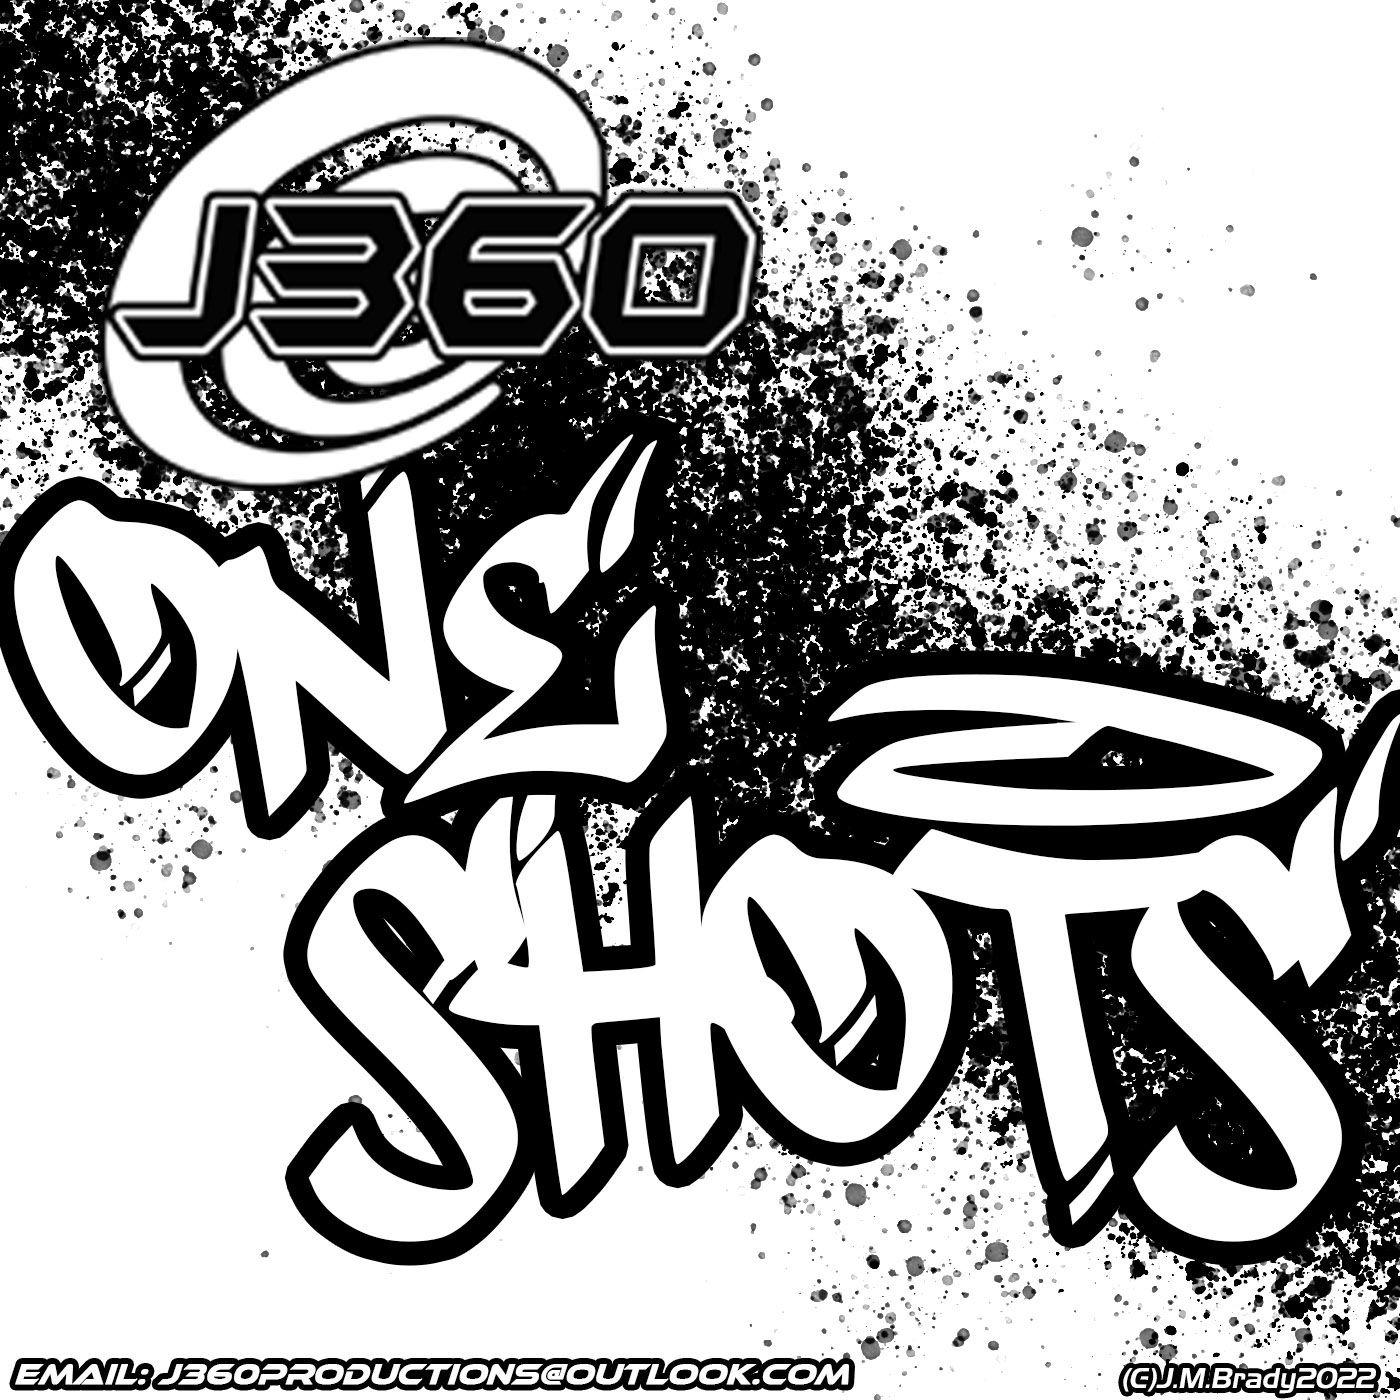 J360 One-Shots